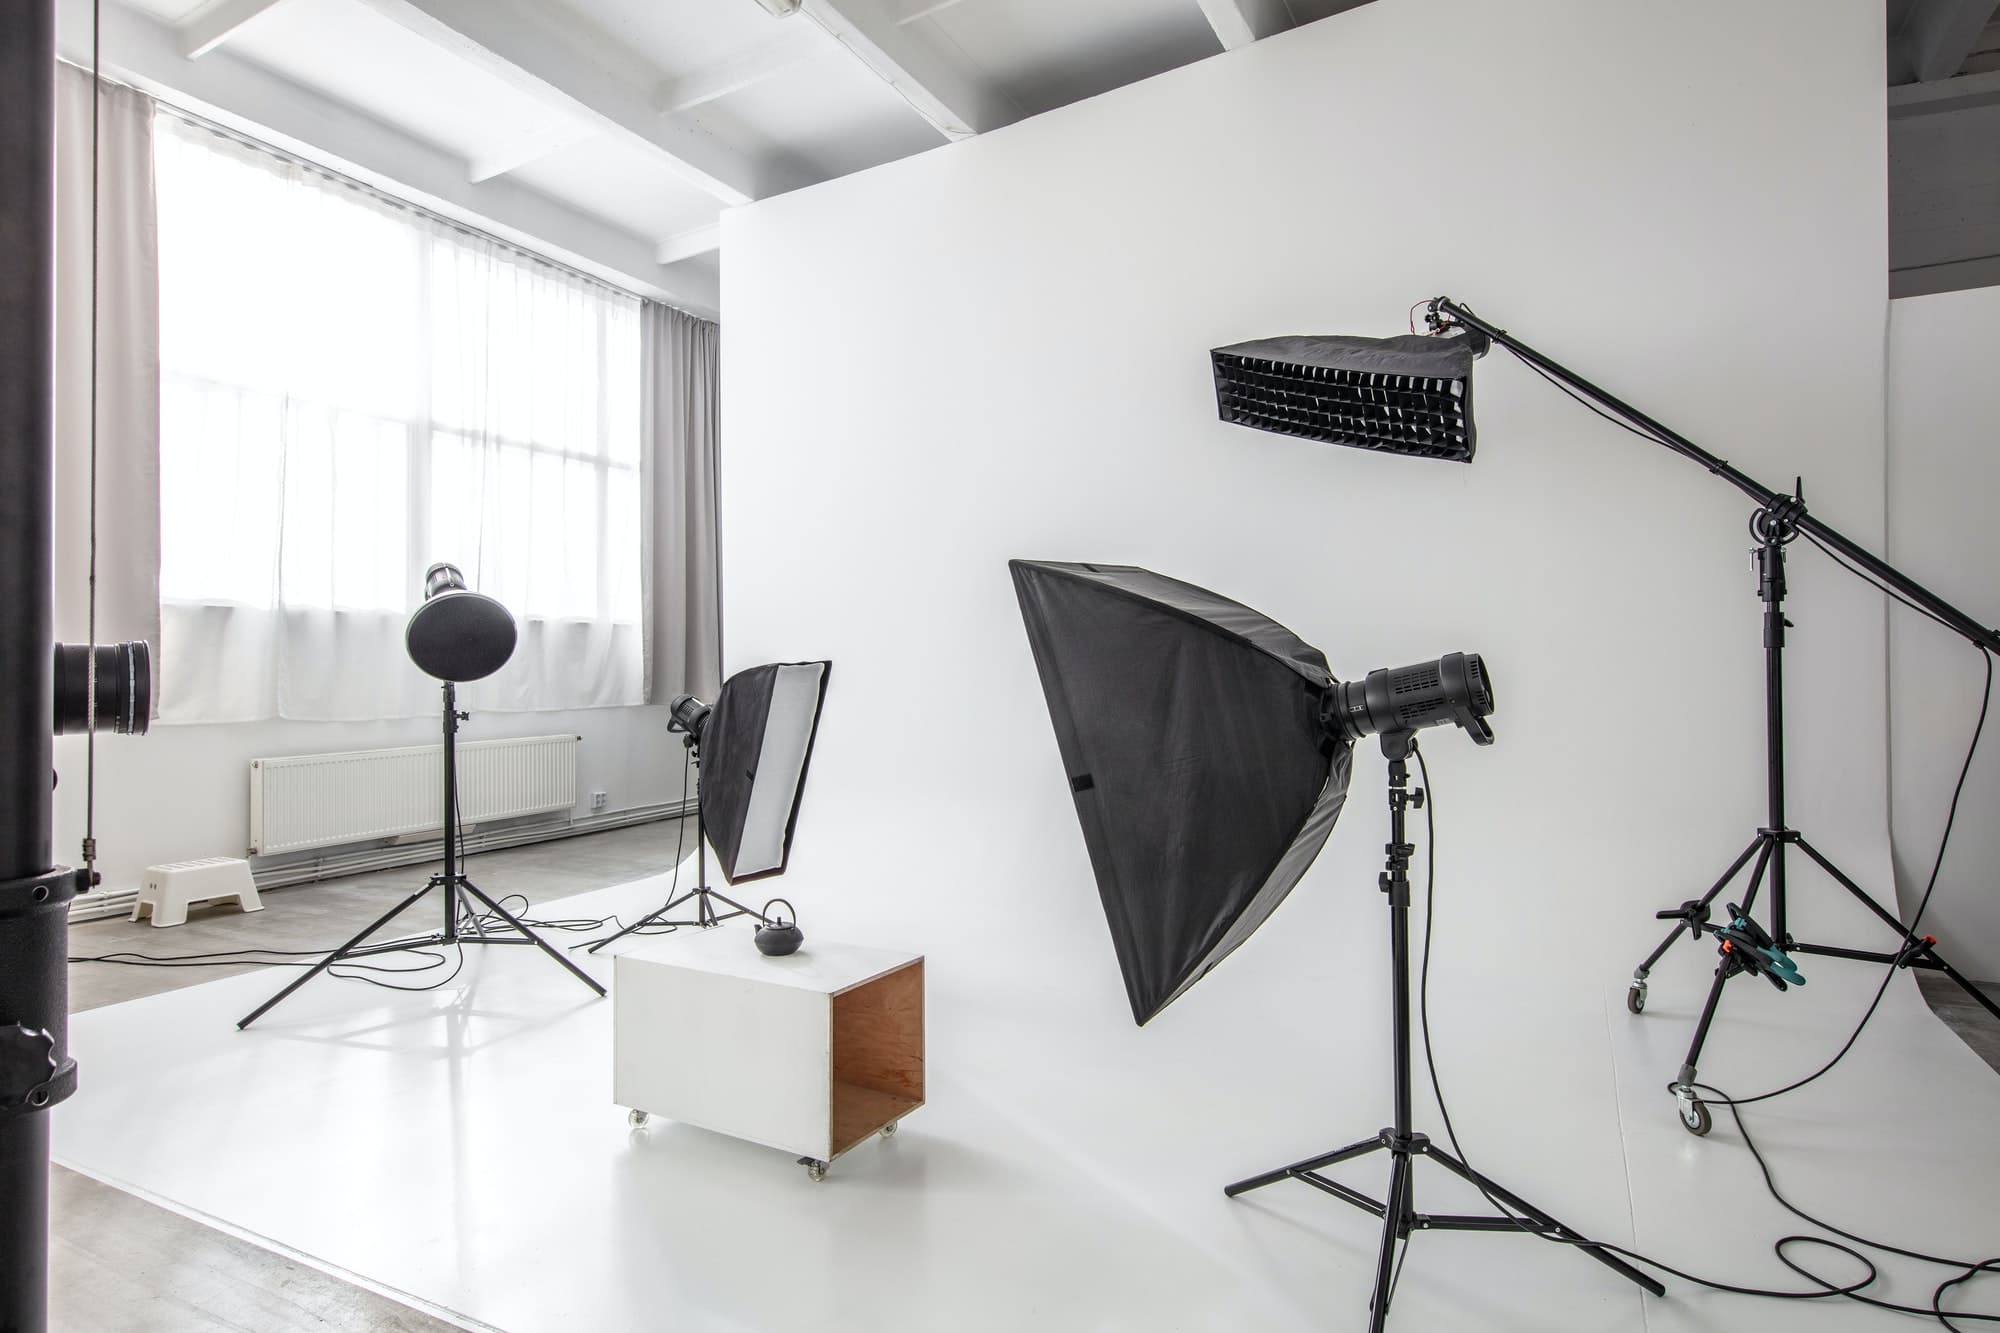 photographic studio space